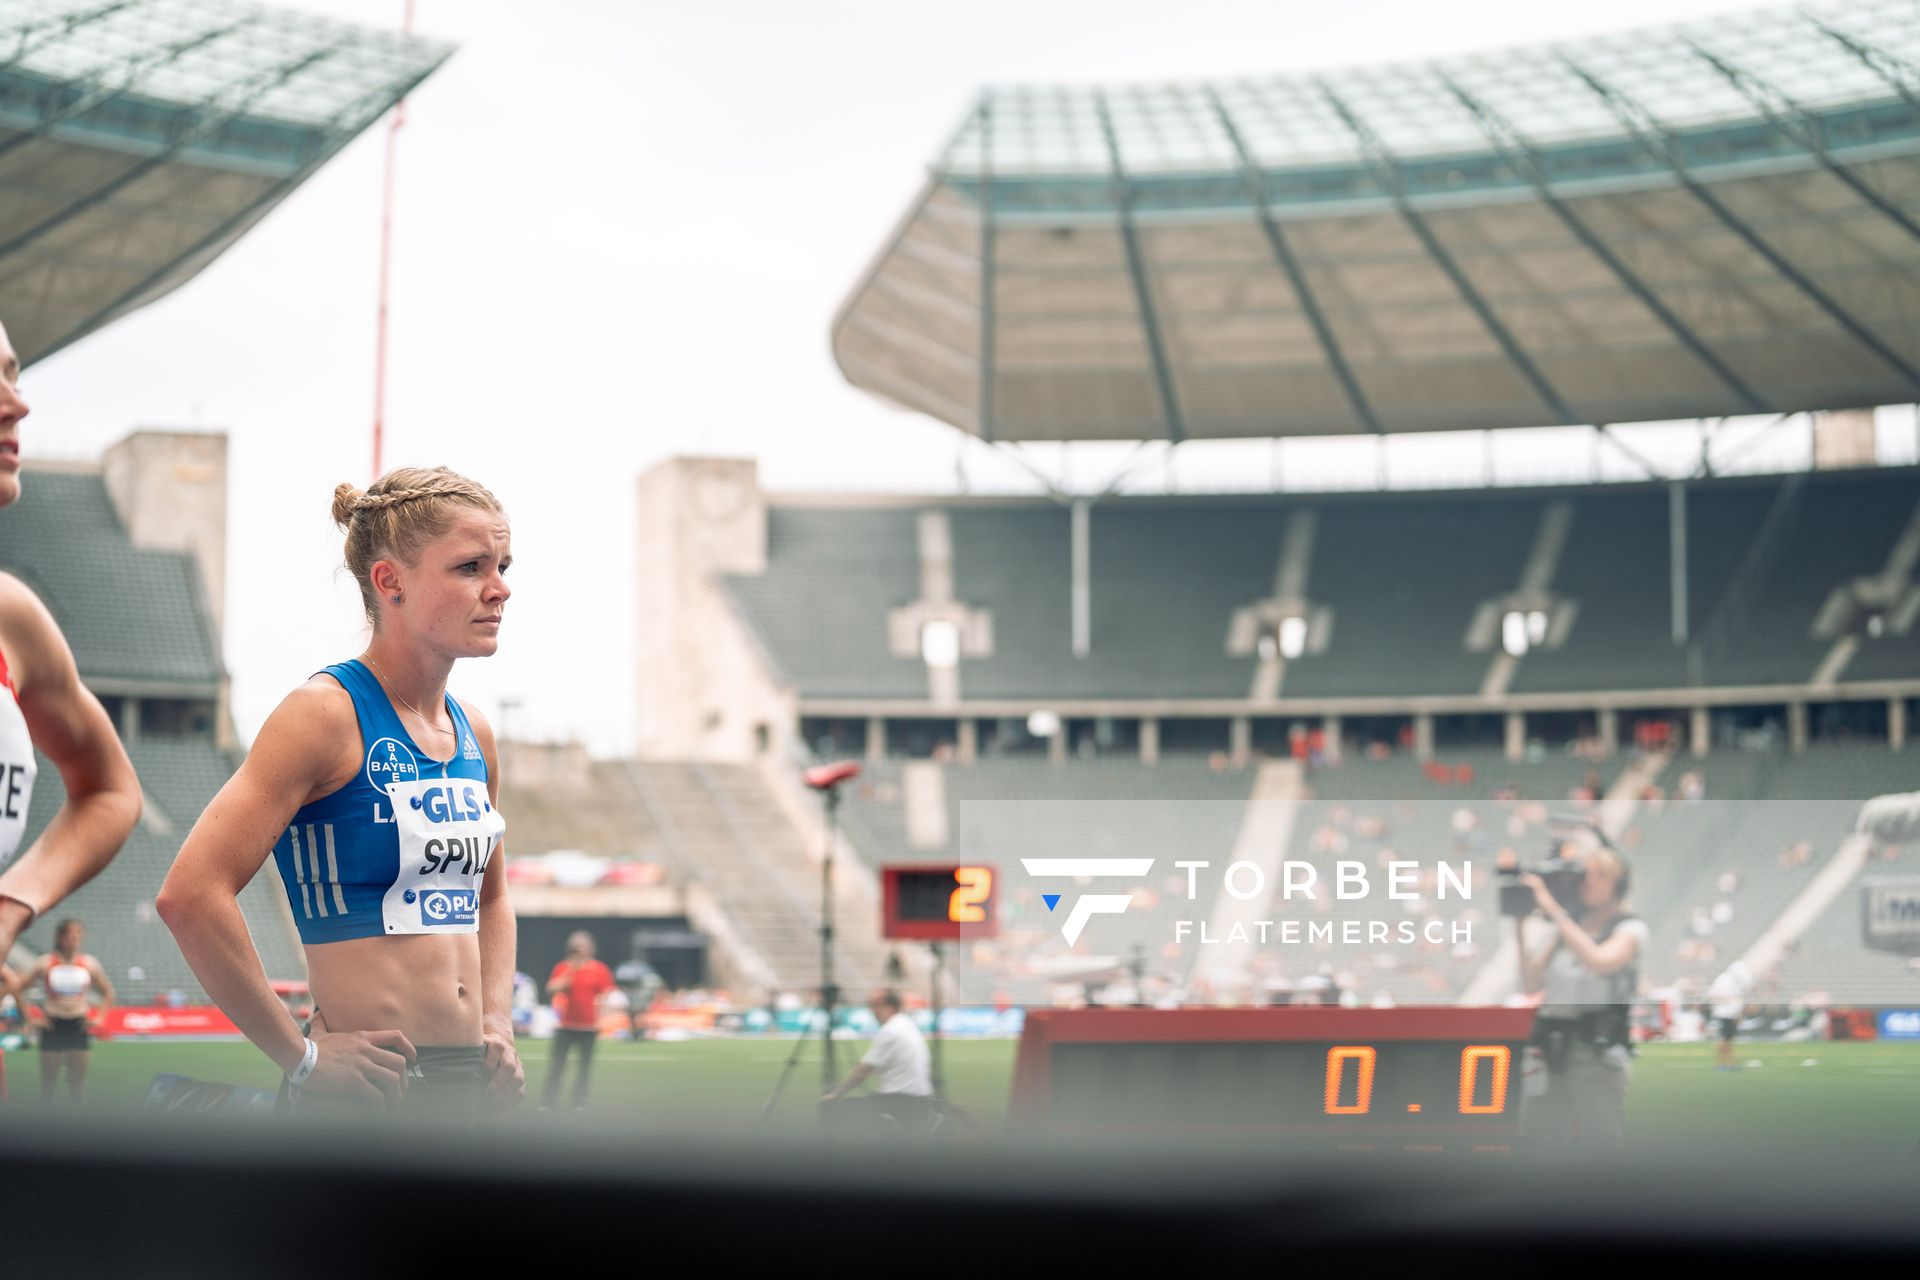 Tanja Spill (LAV Bayer Uerdingen/Dormagen) ueber 800m waehrend der deutschen Leichtathletik-Meisterschaften im Olympiastadion am 25.06.2022 in Berlin